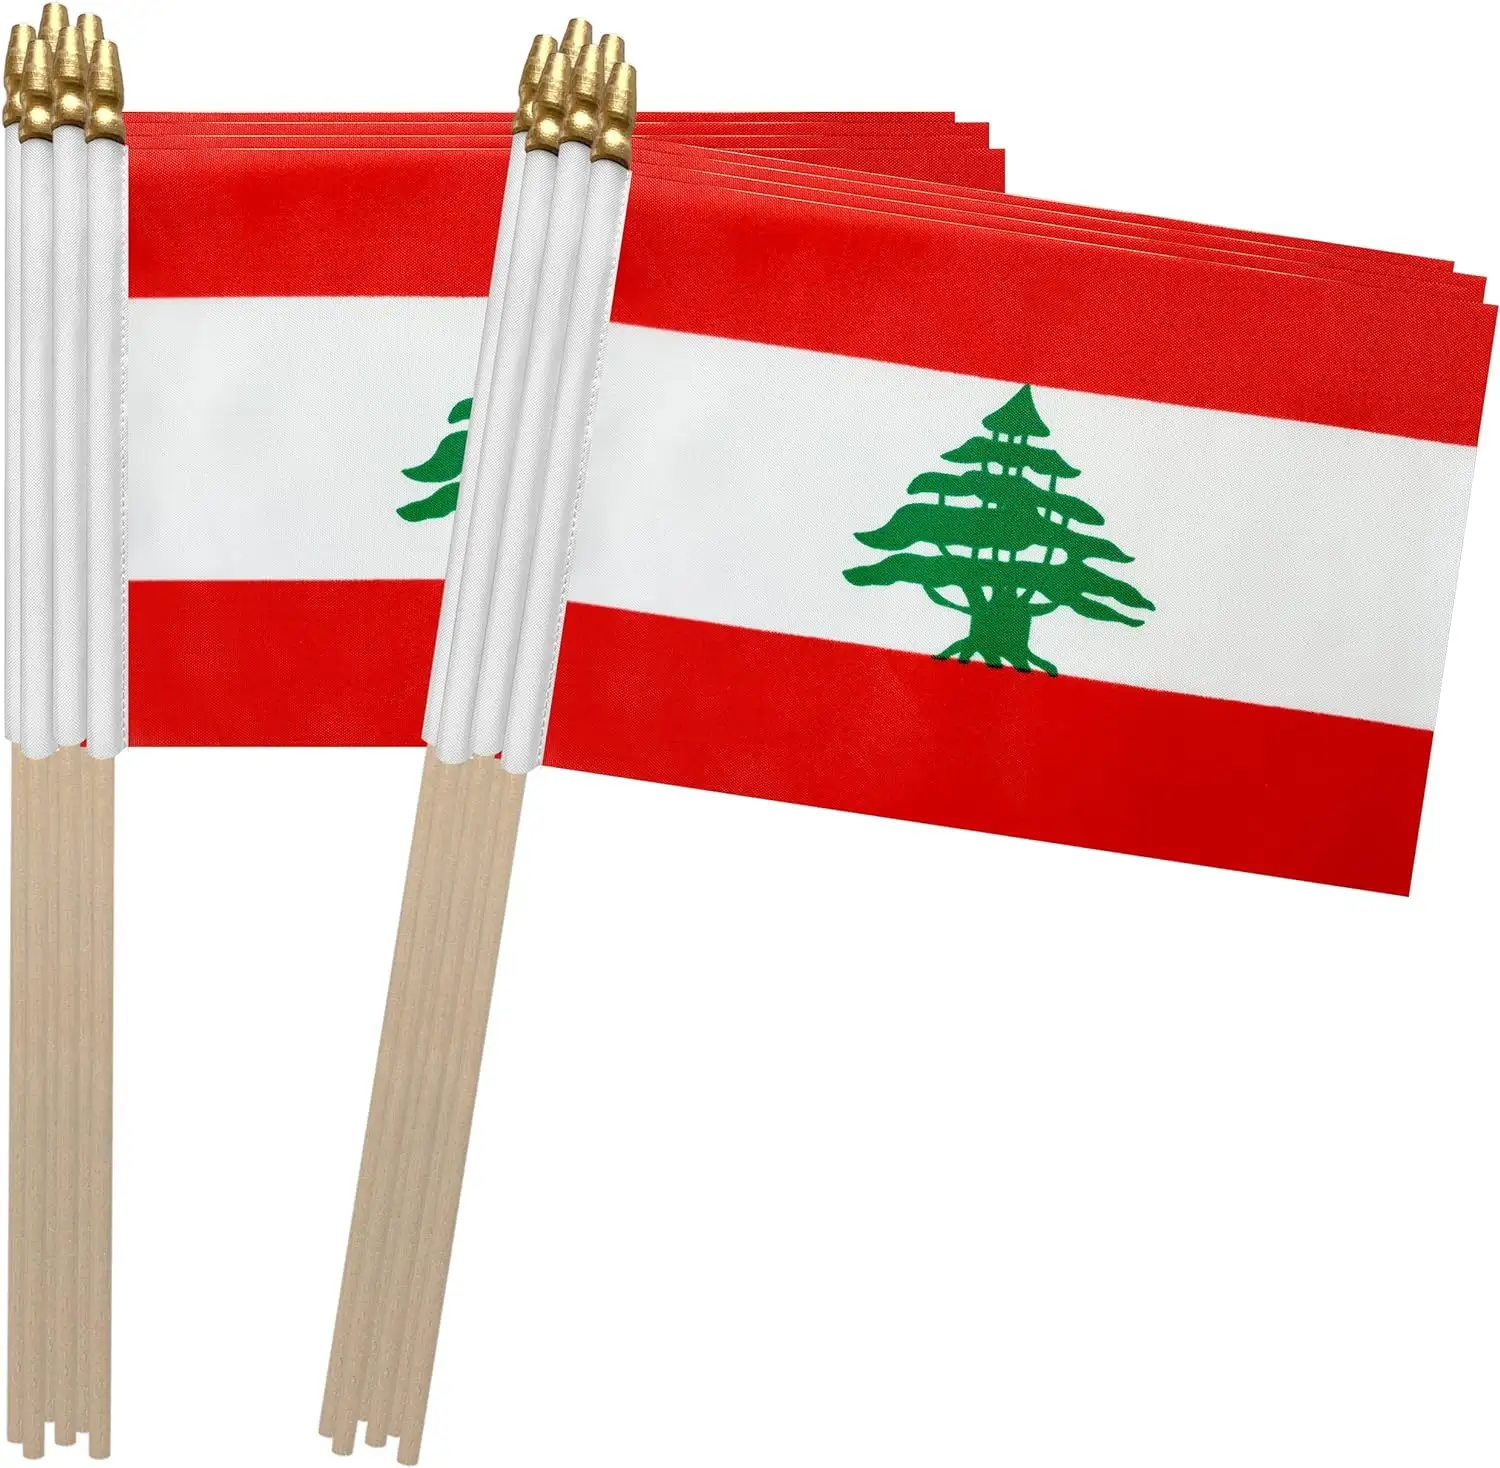 उच्च गुणवत्ता वाले लेबनान स्टिक ध्वज, लेबनानी गणराज्य के छोटे मिनी हाथ में पकड़ने वाले झंडे 4x6 इंच भेजने के लिए तैयार